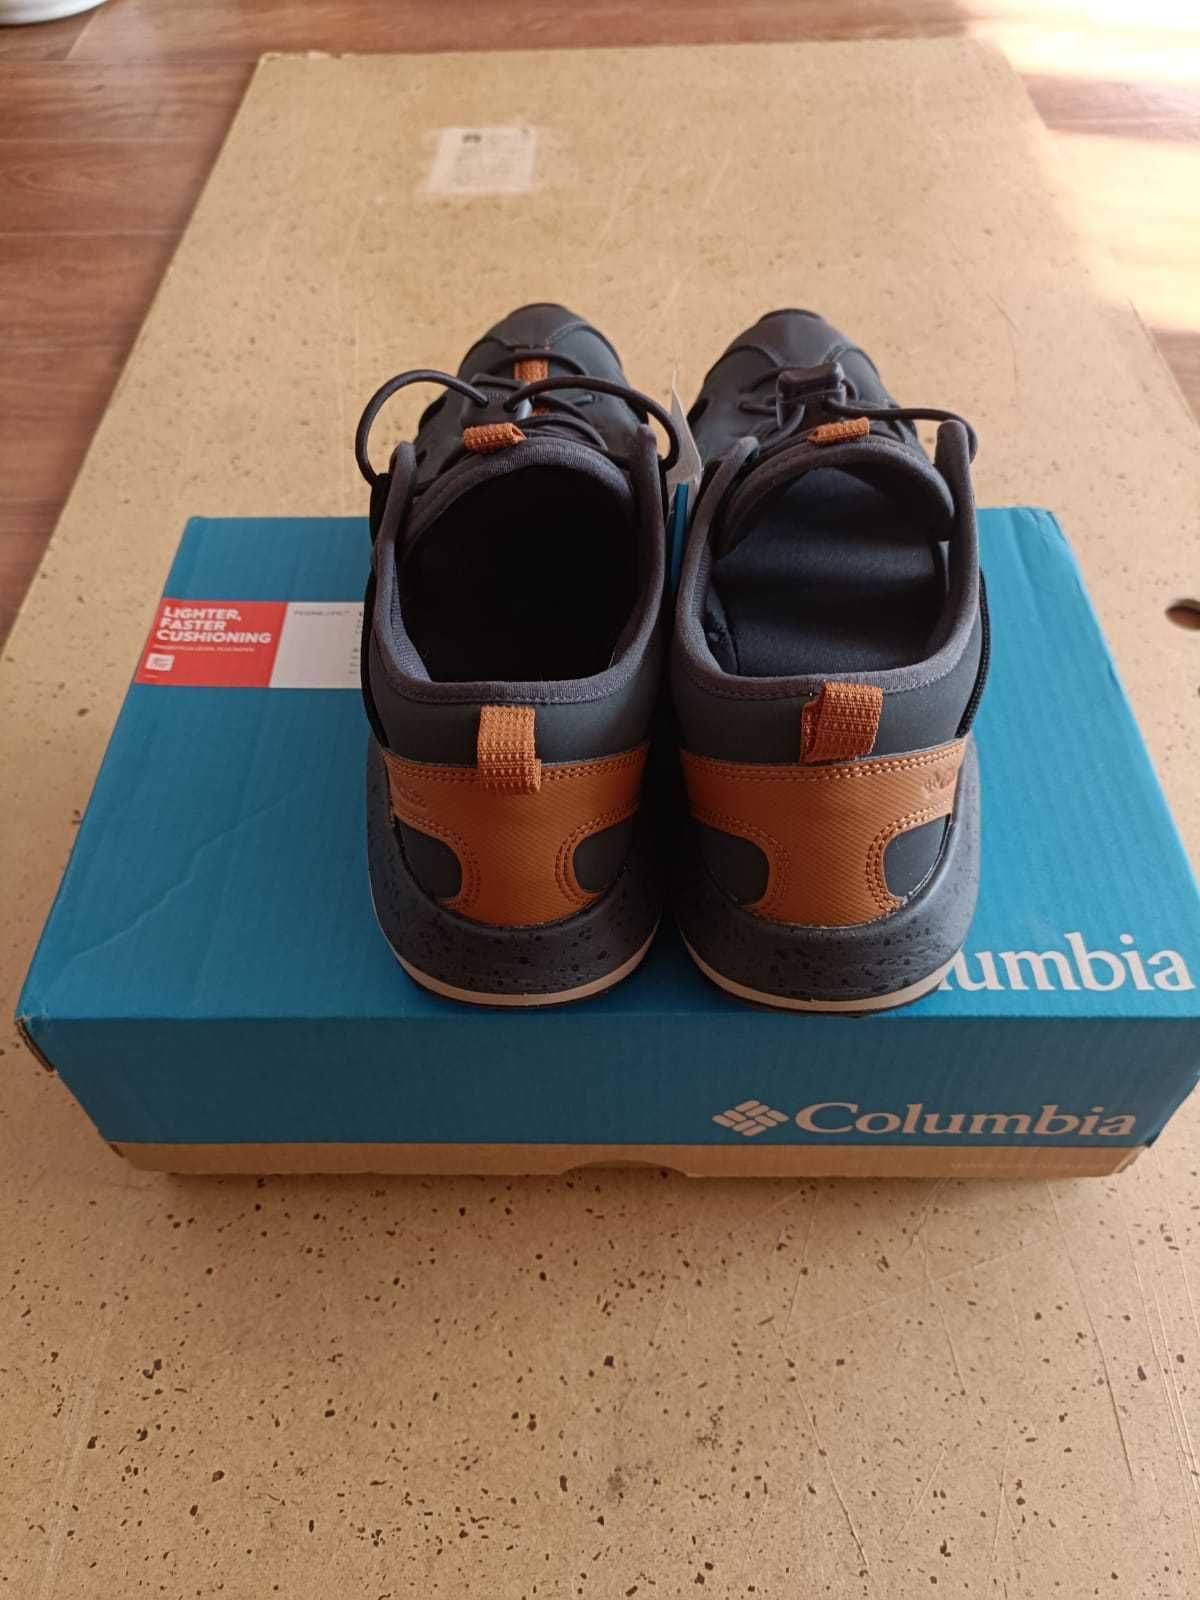 Новые кроссовки Columbia - 43 размер. Лето, в коробке. Успей купить!